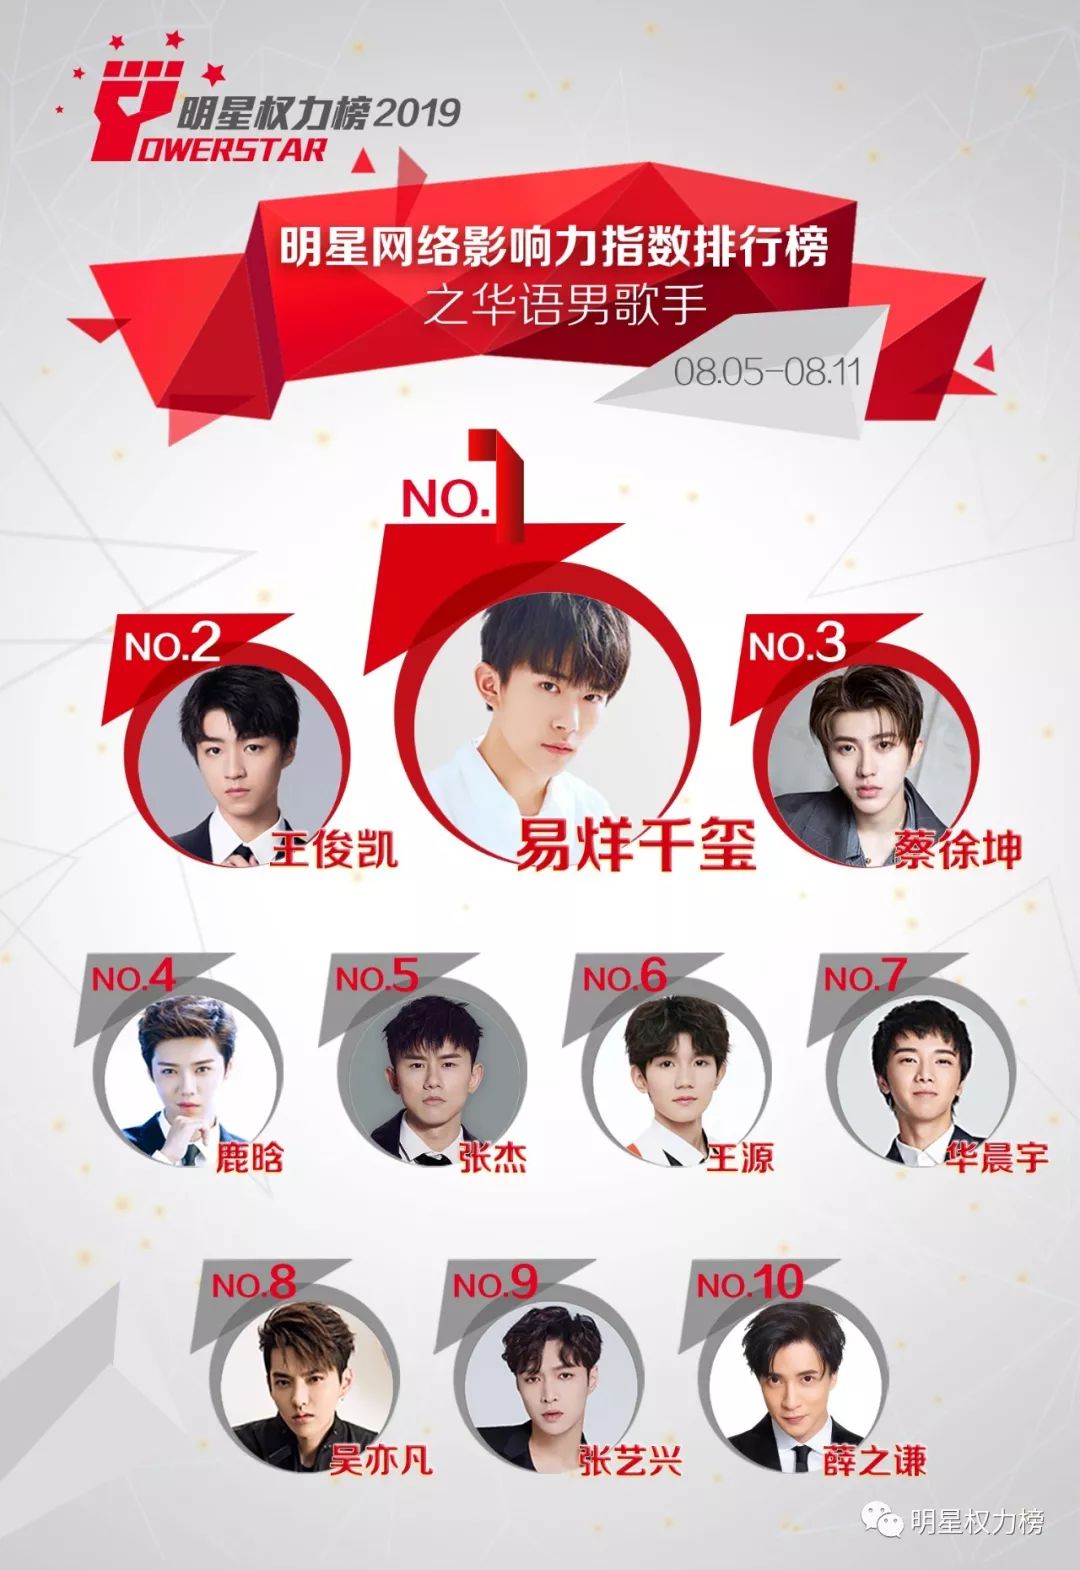 明星网络影响力指数排行榜第212期榜单之华语男歌手Top10